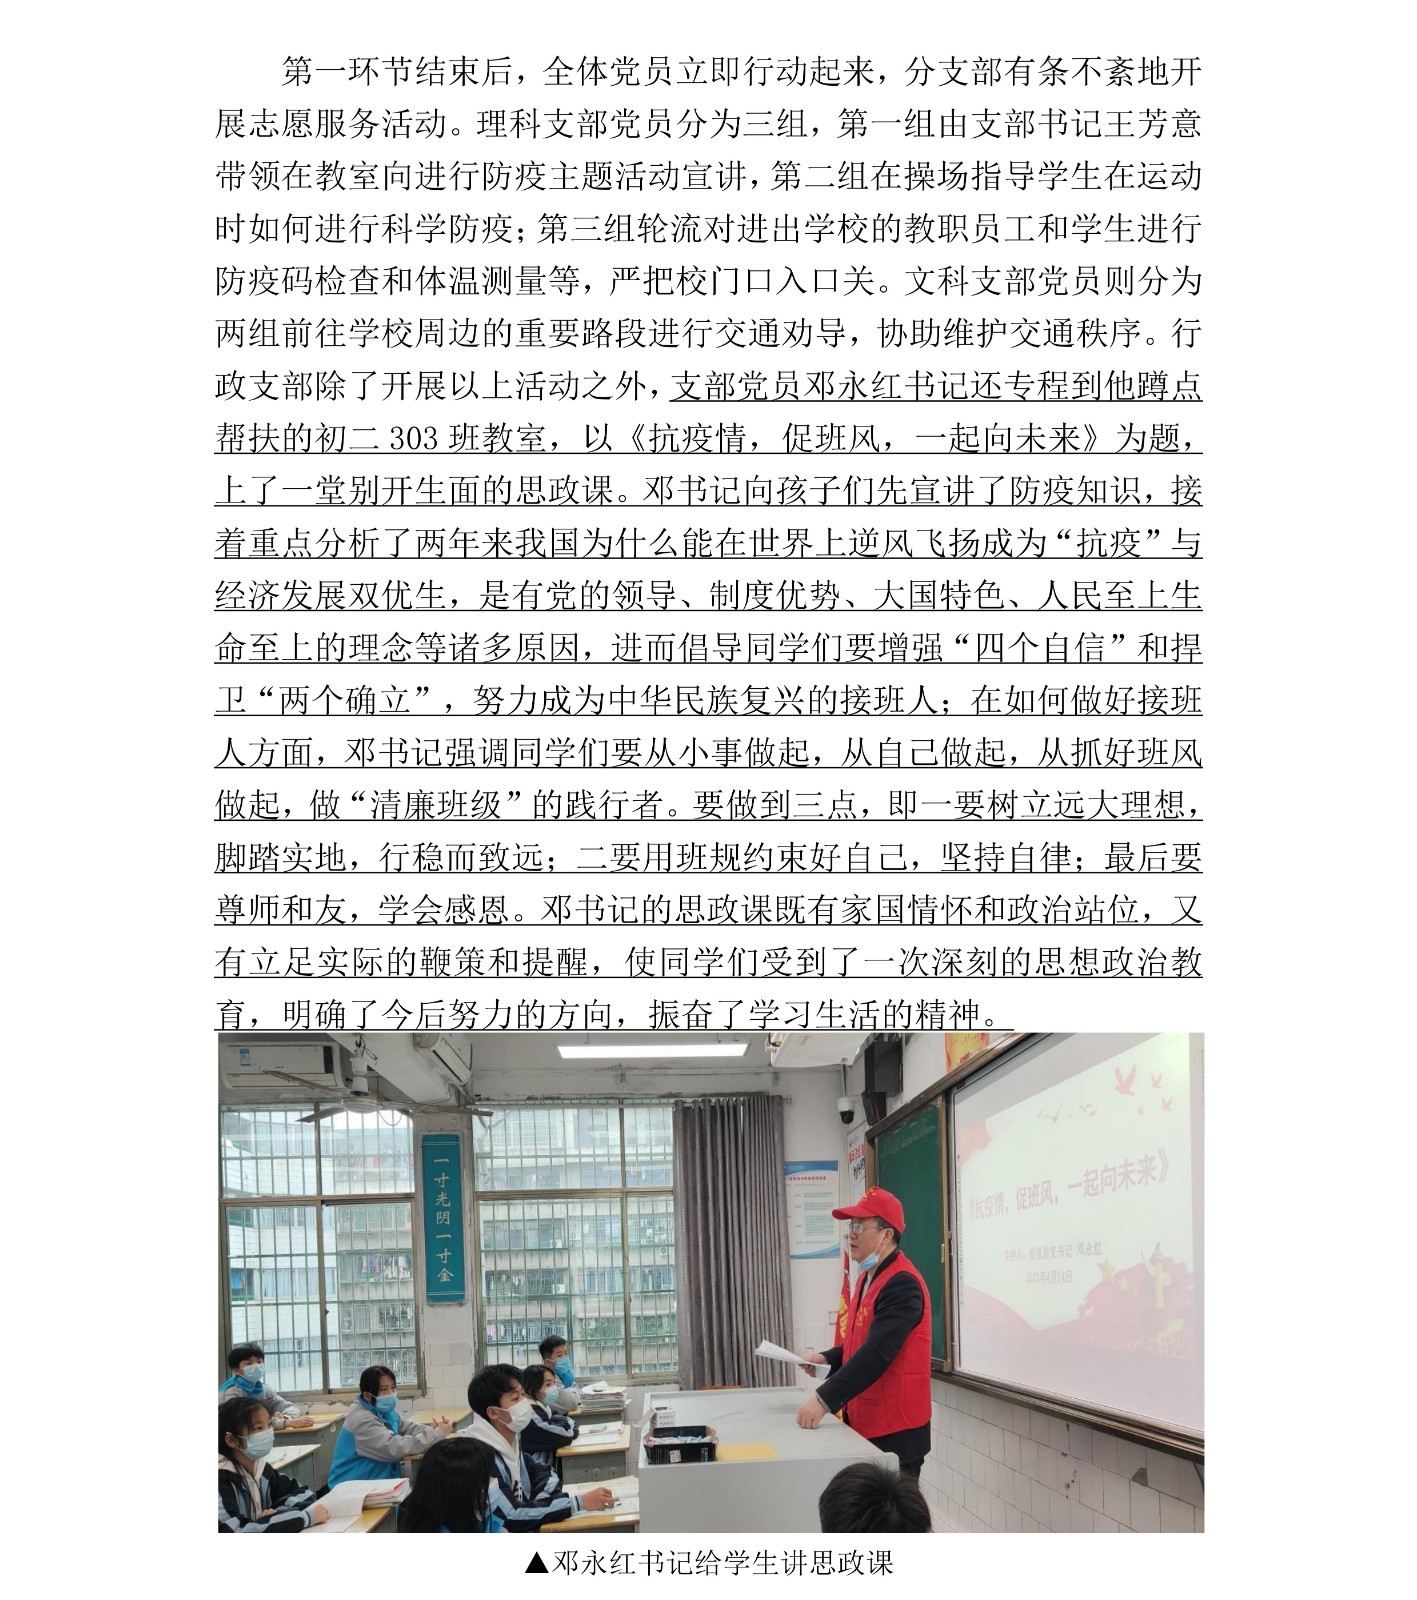 188金宝清廉学校建设第2期简报_05.jpg